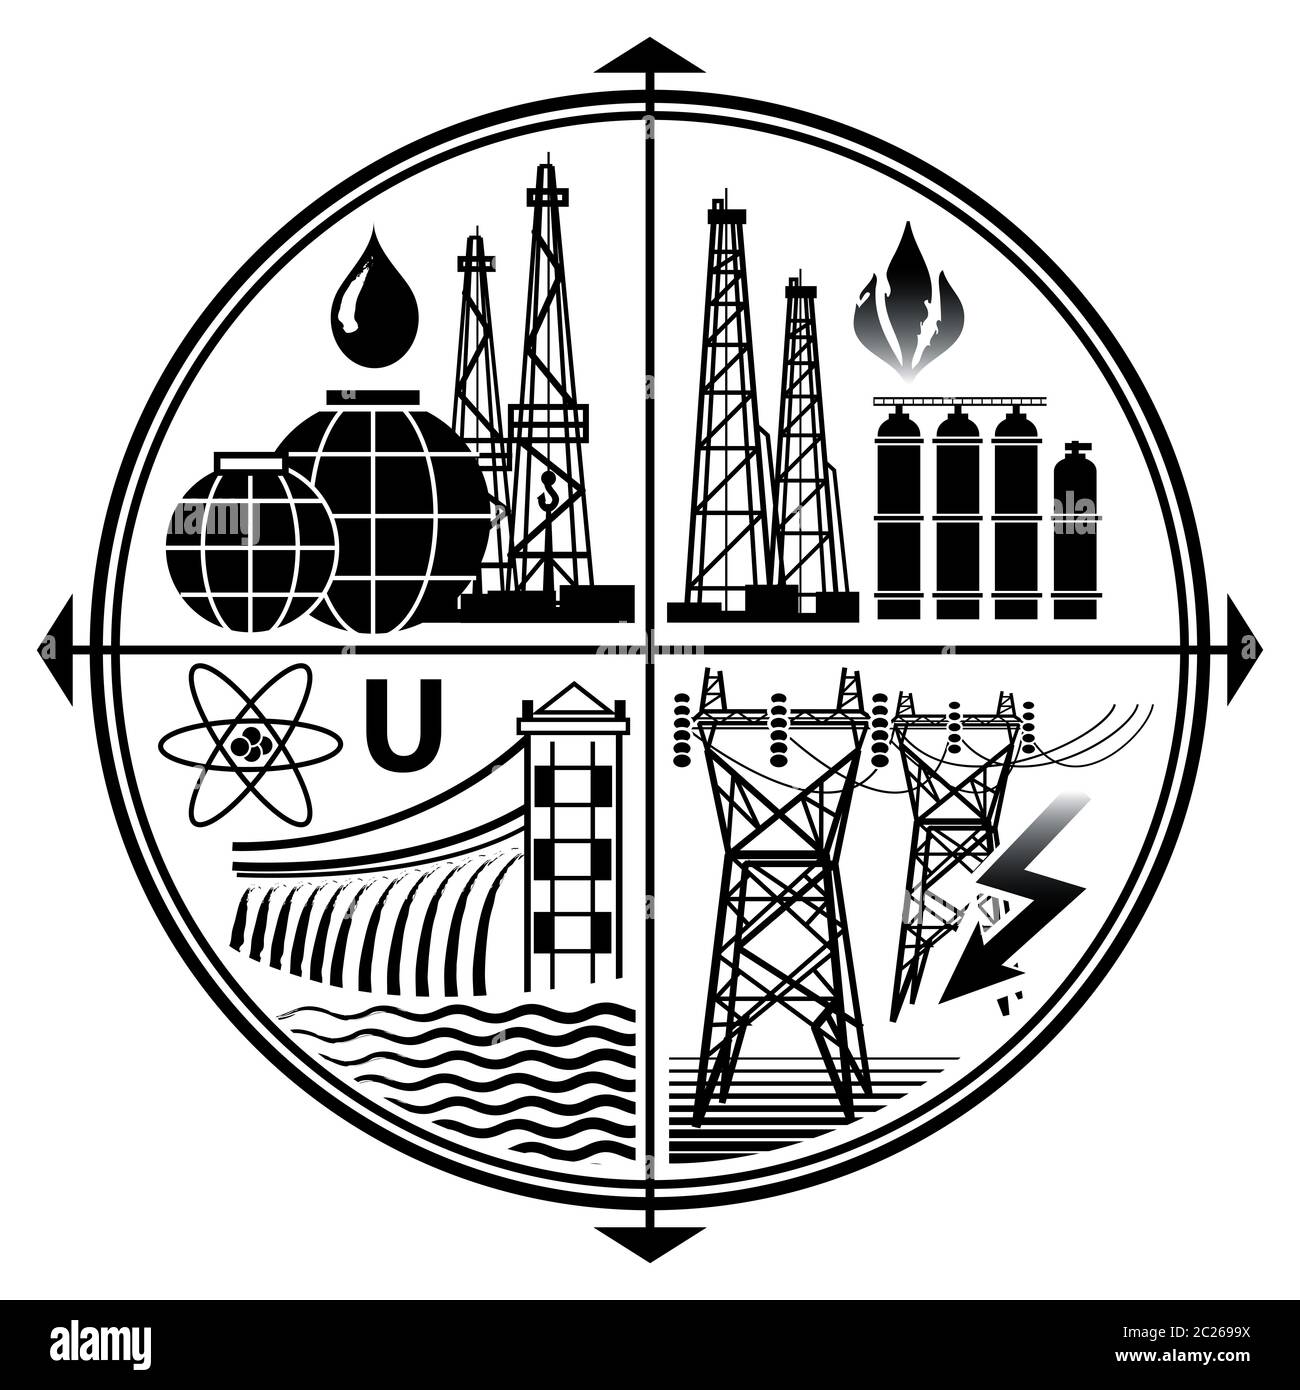 Ressources énergétiques : pétrole, gaz, électricité, énergie nucléaire et hydroélectrique. Emblème de l'industrie de l'extraction d'énergie combustibles fossiles technologies Banque D'Images